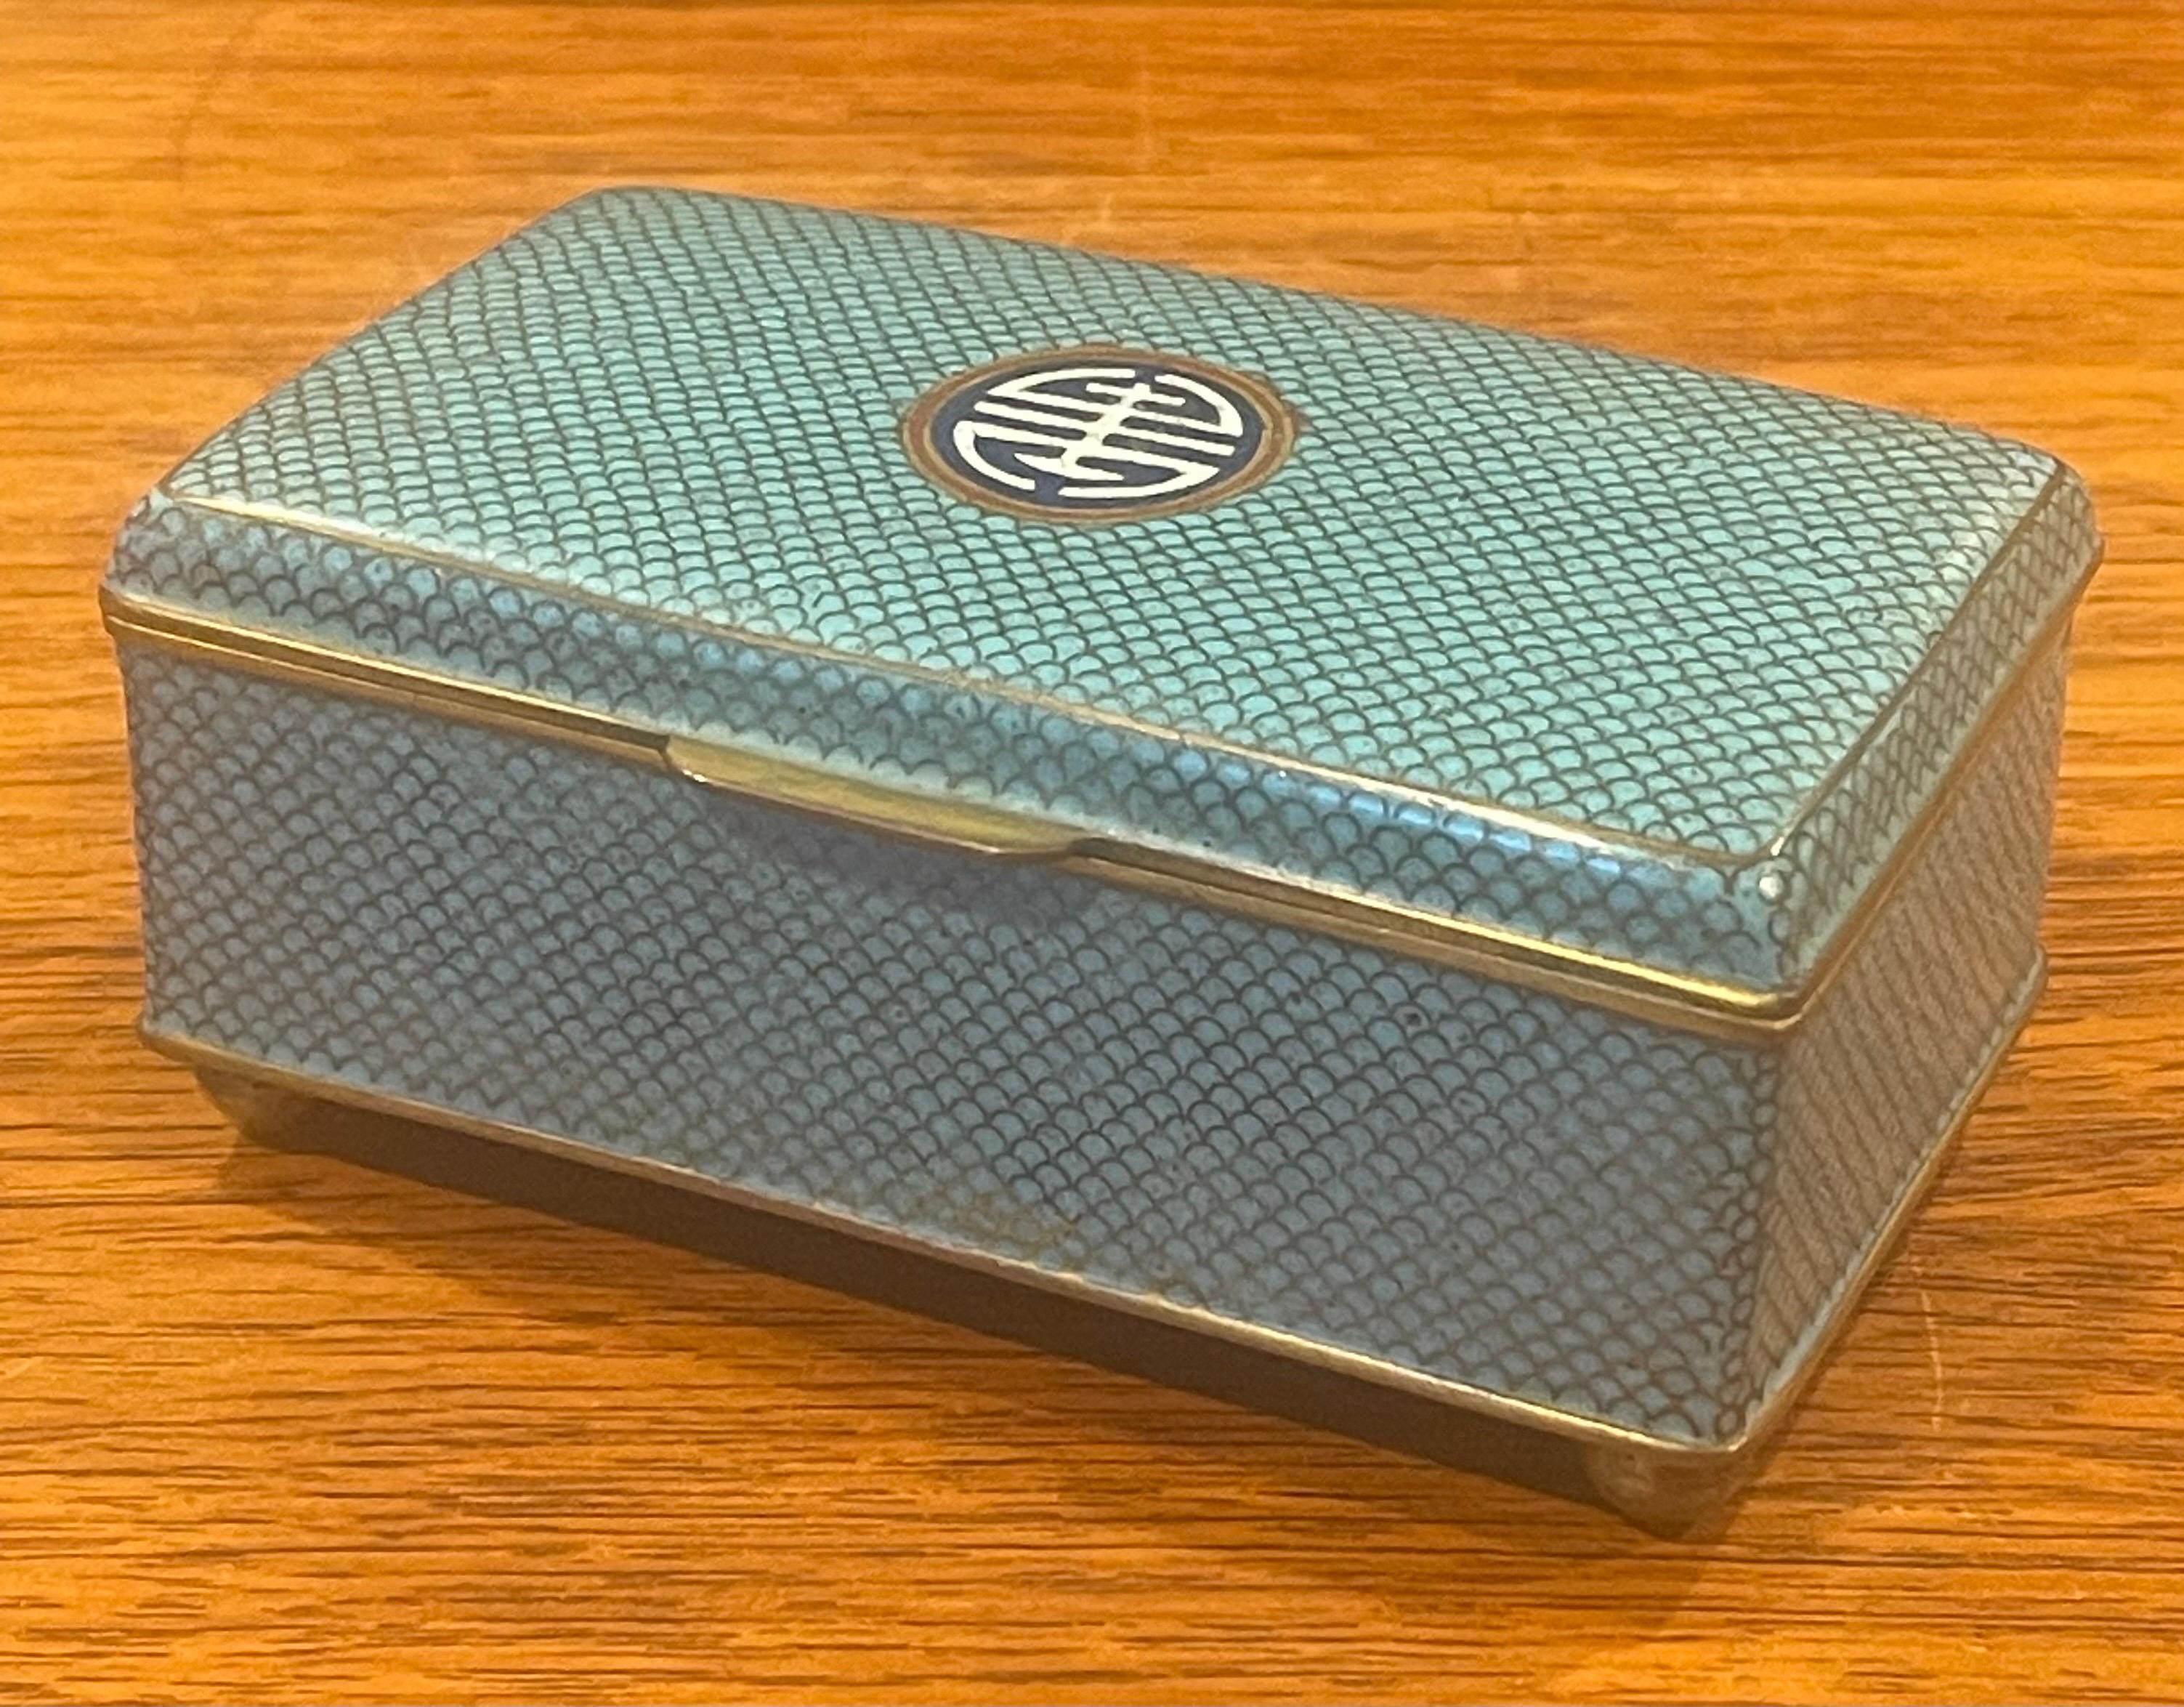 Exquise boîte japonaise à couvercle en cloisonné avec des pieds en laiton de la période Meiji, vers la fin des années 1800. La boîte a un superbe design géométrique inticulé et est en très bon état ; elle mesure 4,5 